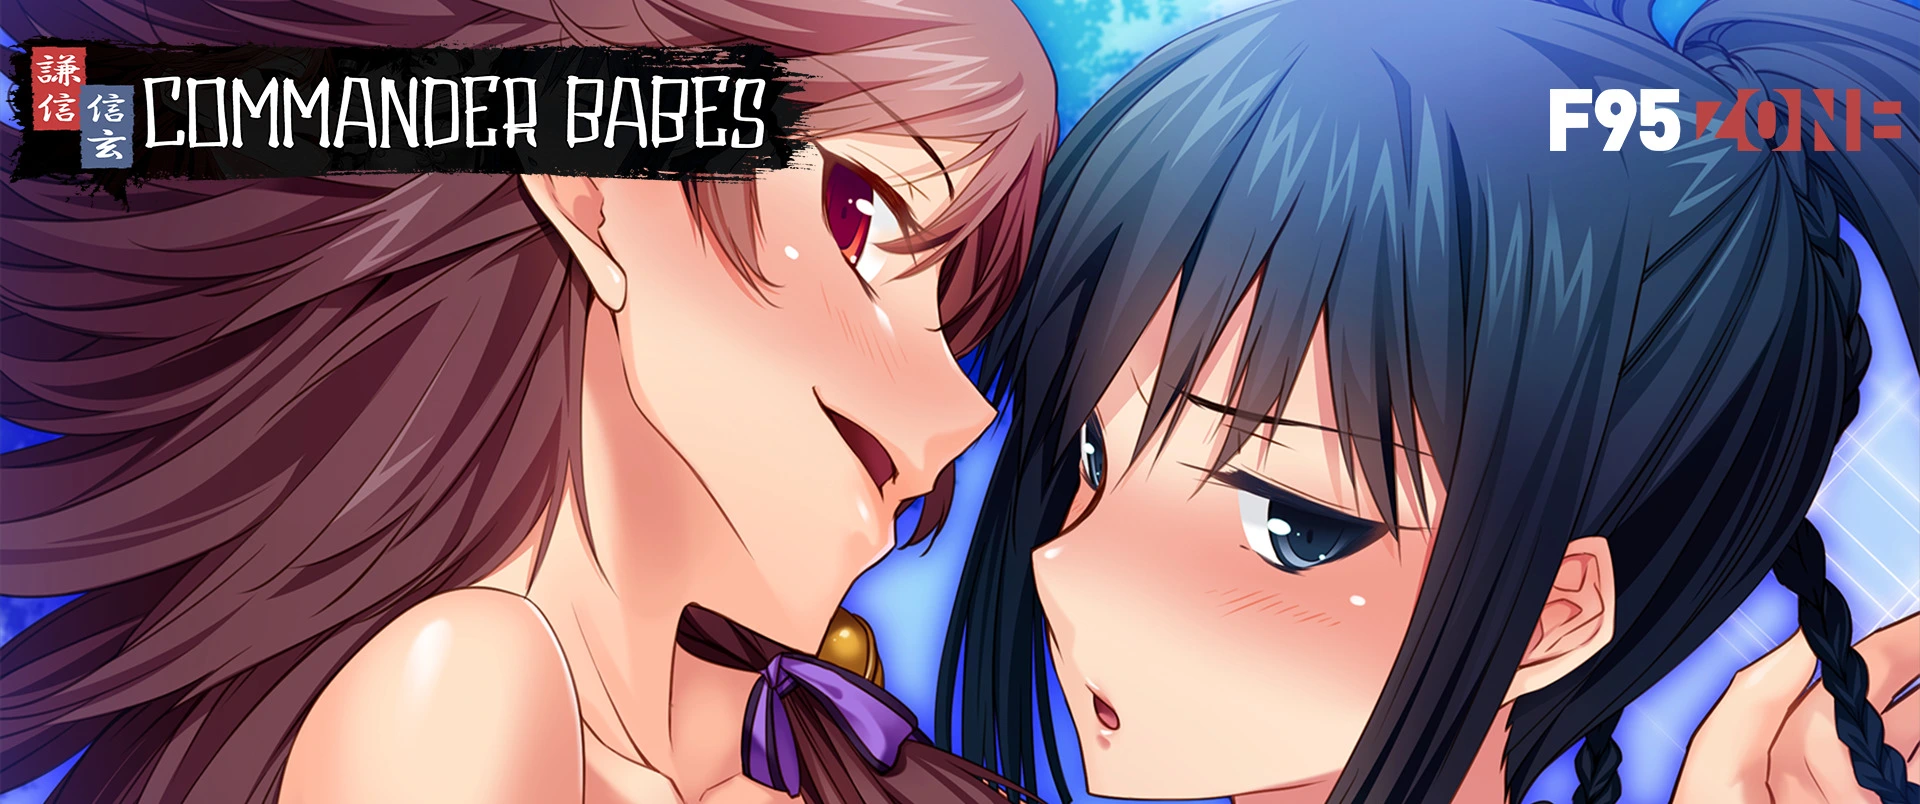 Commander Babes [v1.2.4] main image